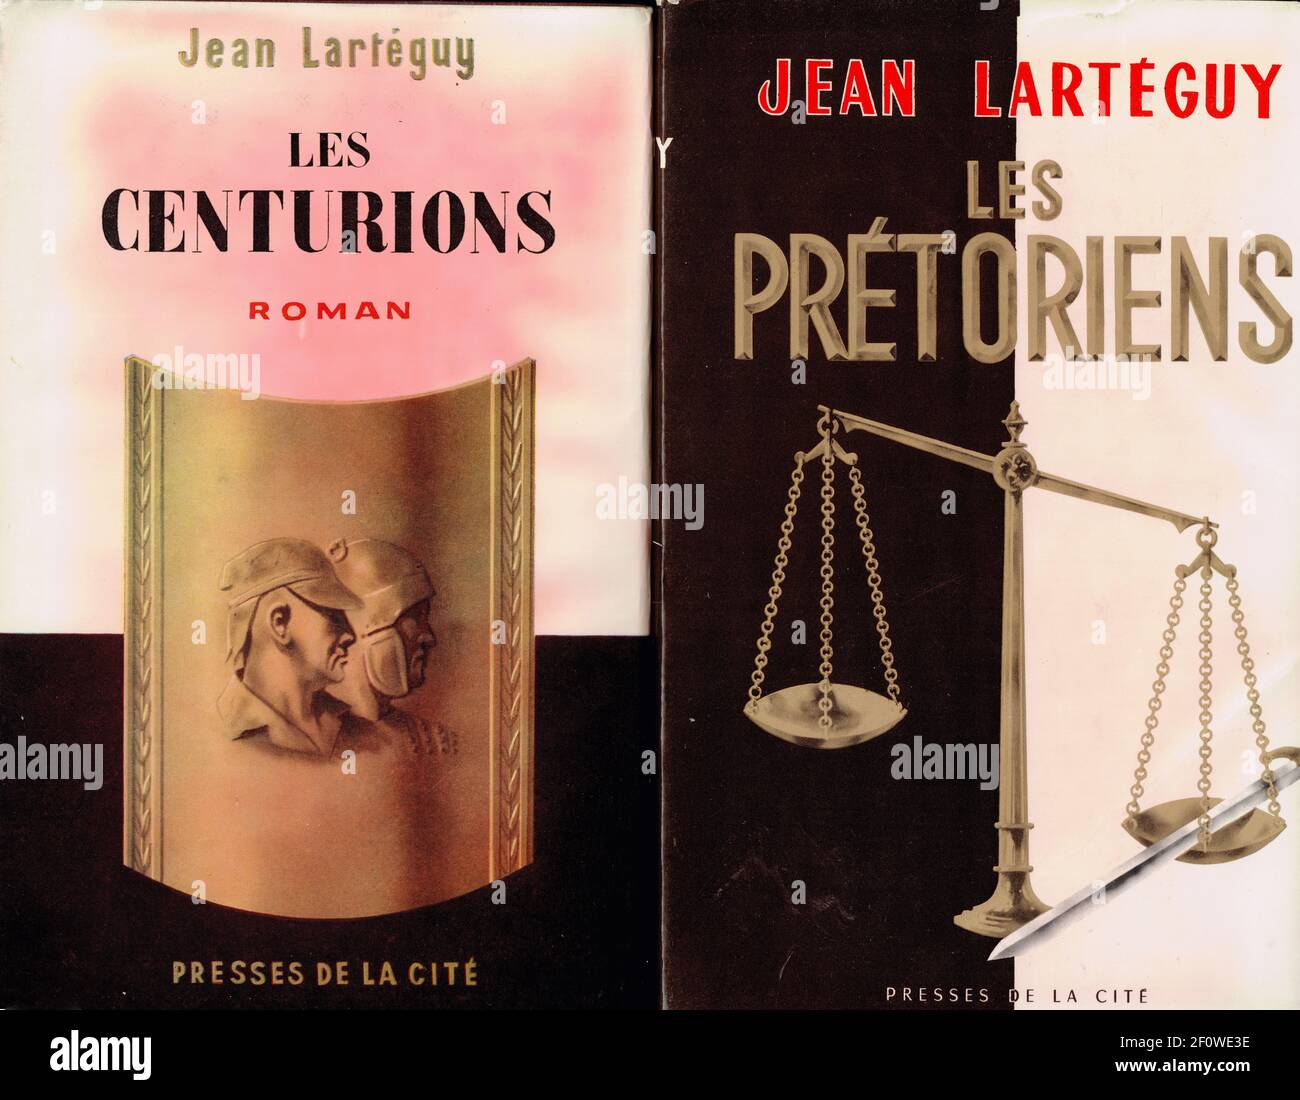 Jean Larteguy saga: Les Centurions & Les Pretoriens", France, 1960 Stock  Photo - Alamy